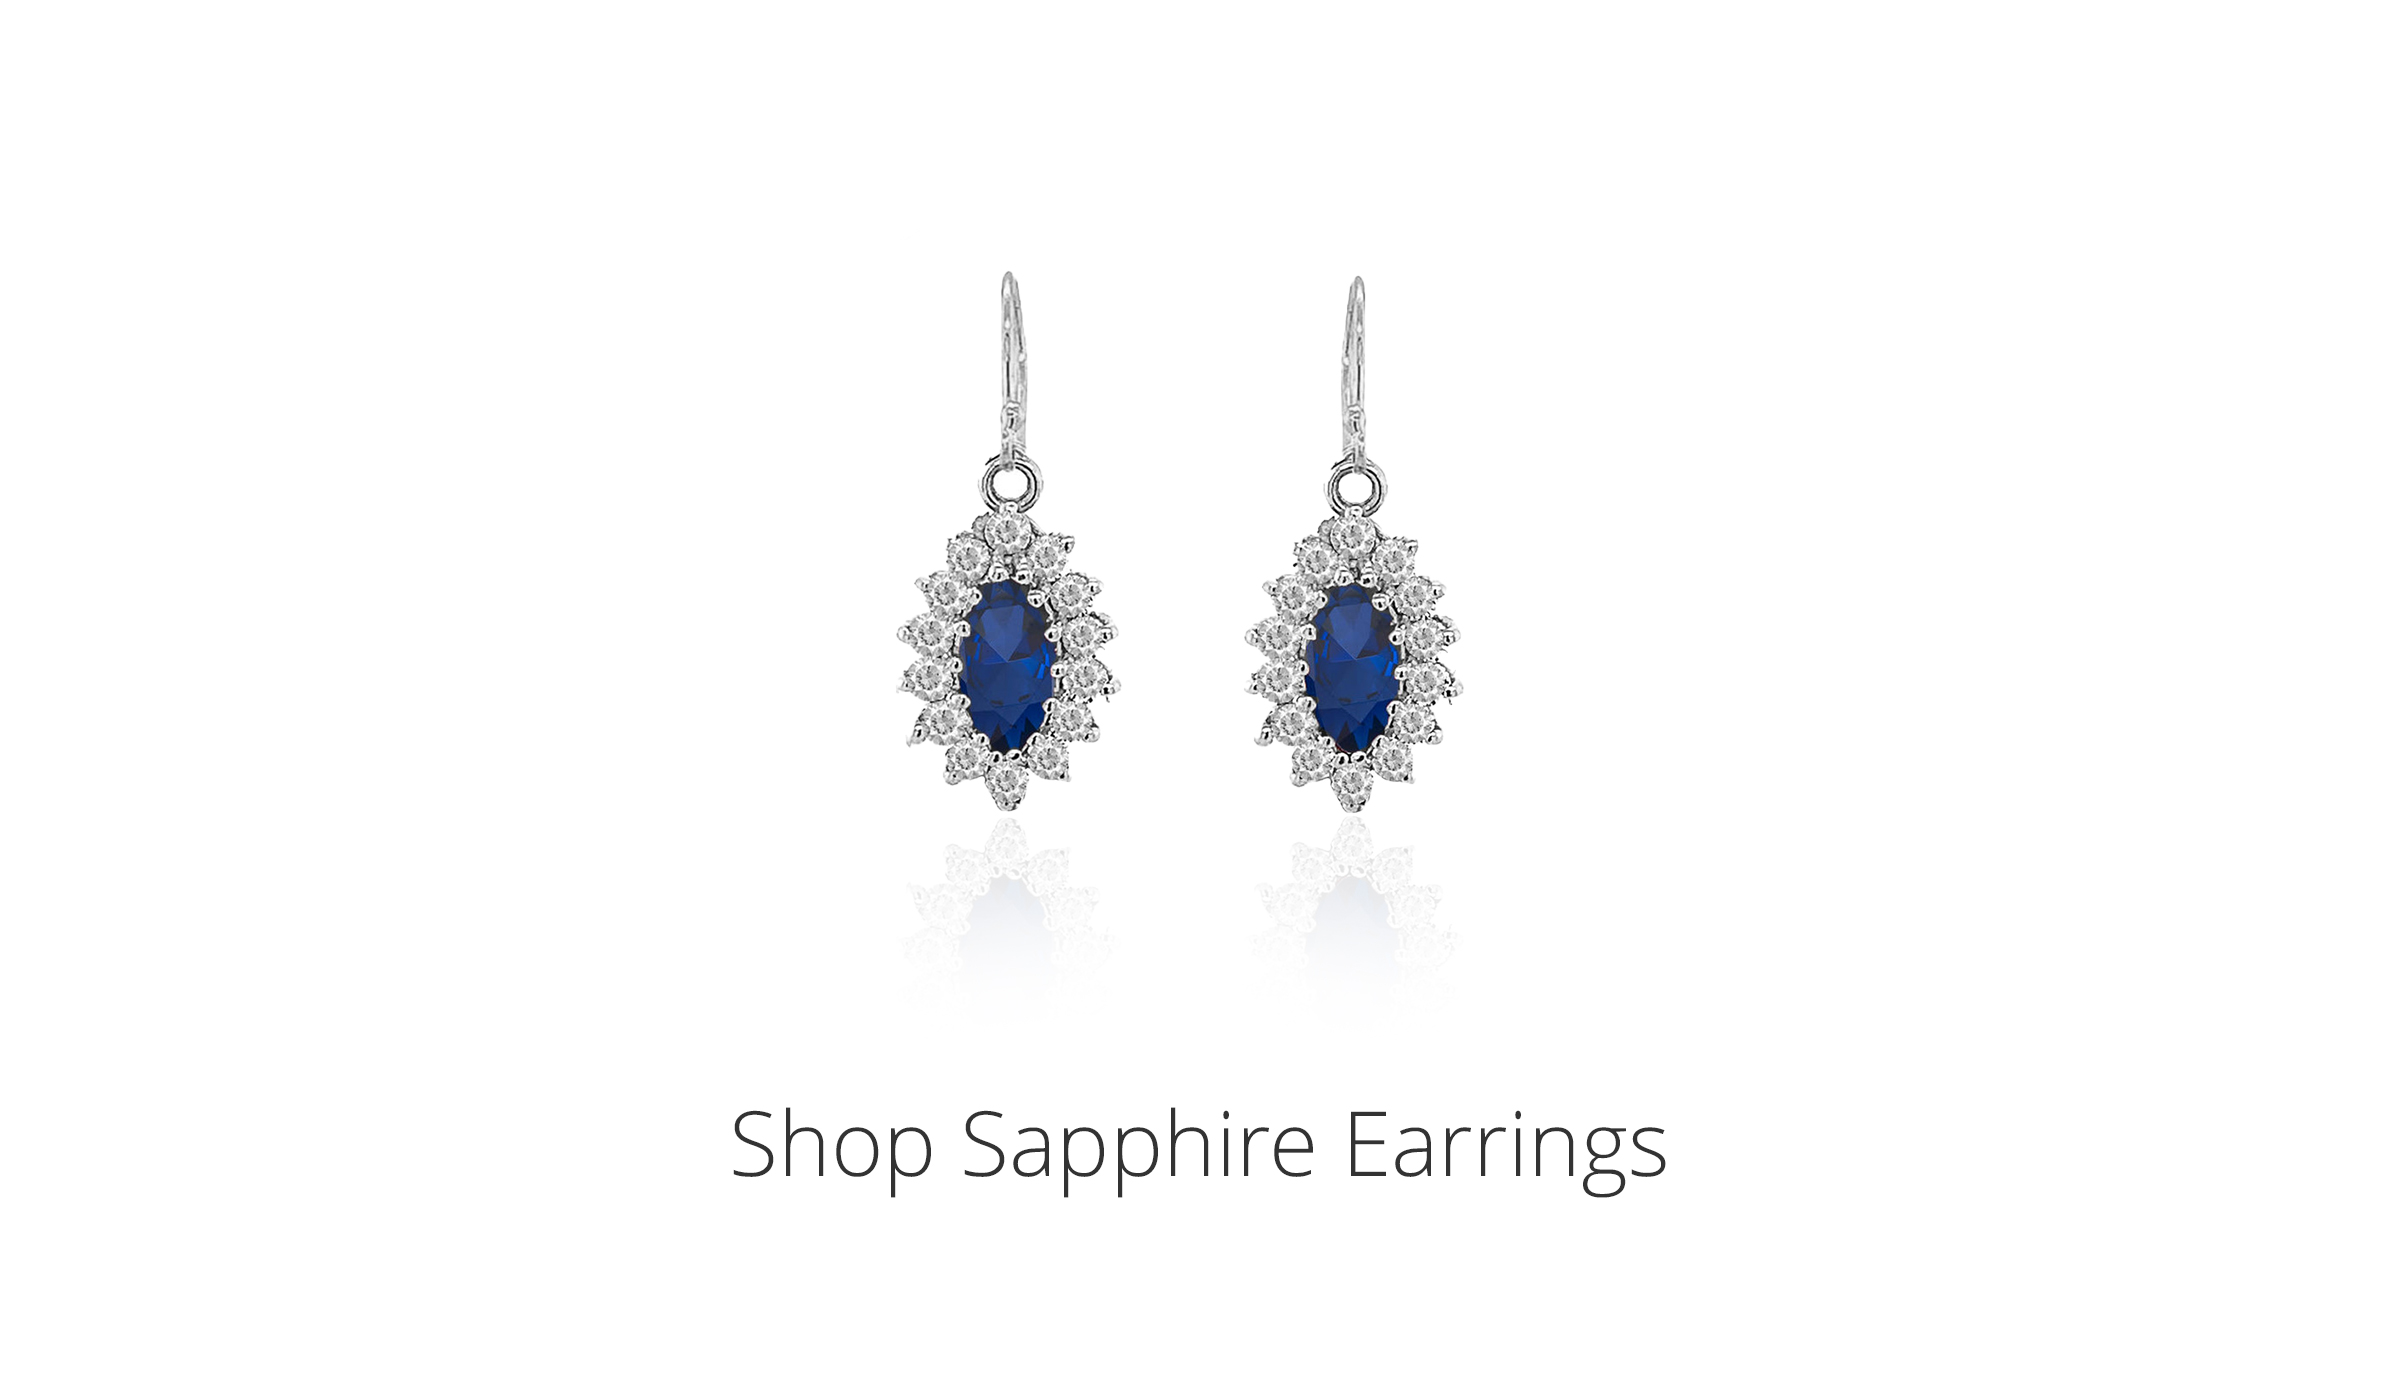 Shop Sapphire Earrings